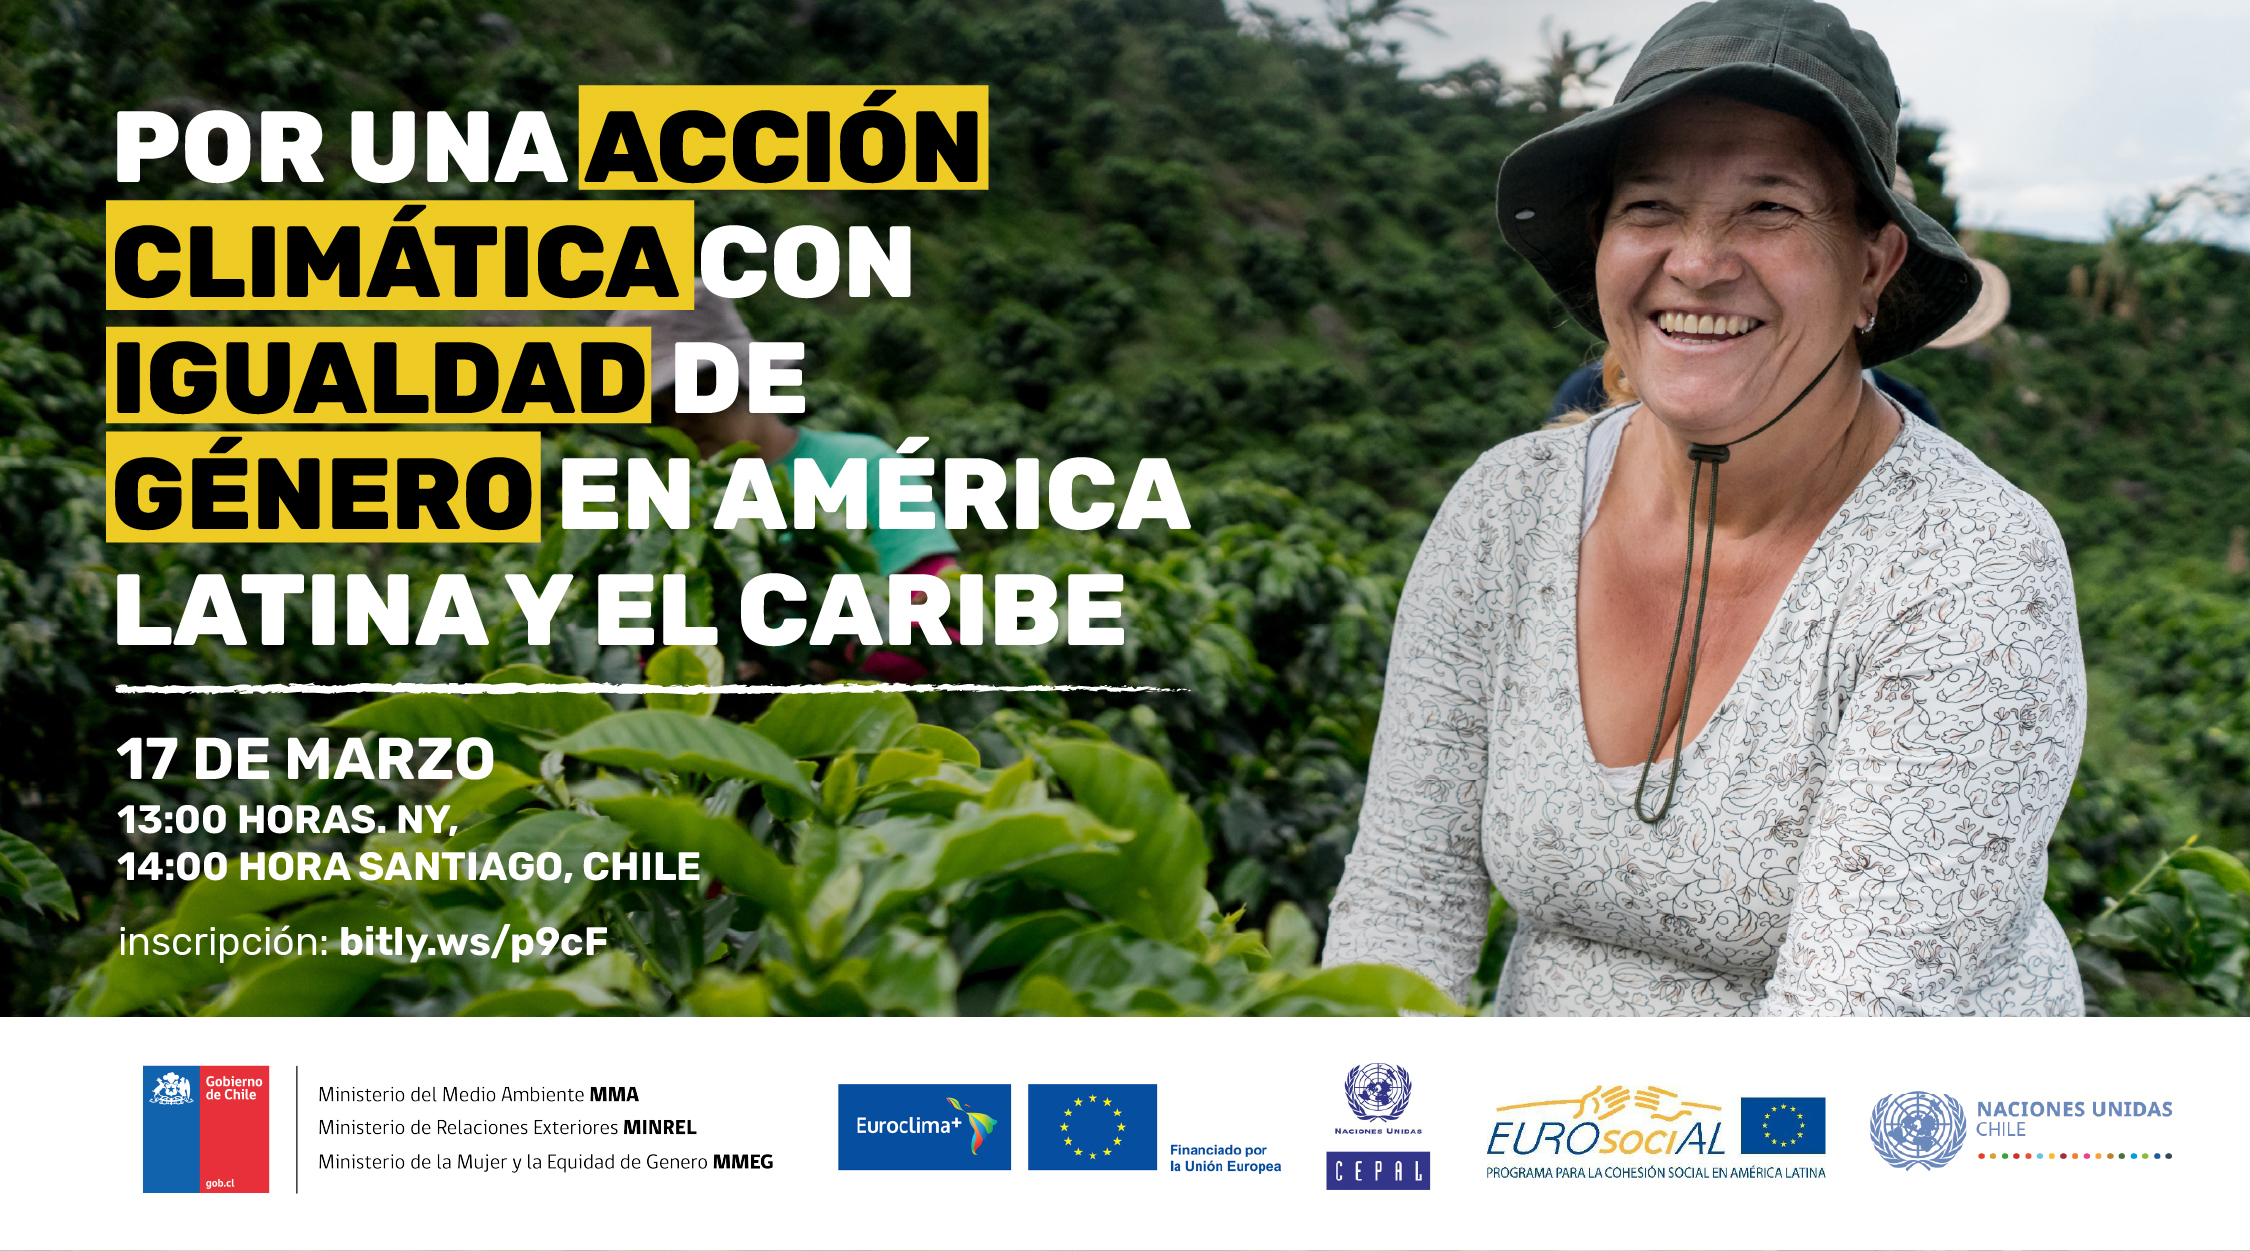 Acción climática con igualdad de género en América Latina y el Caribe